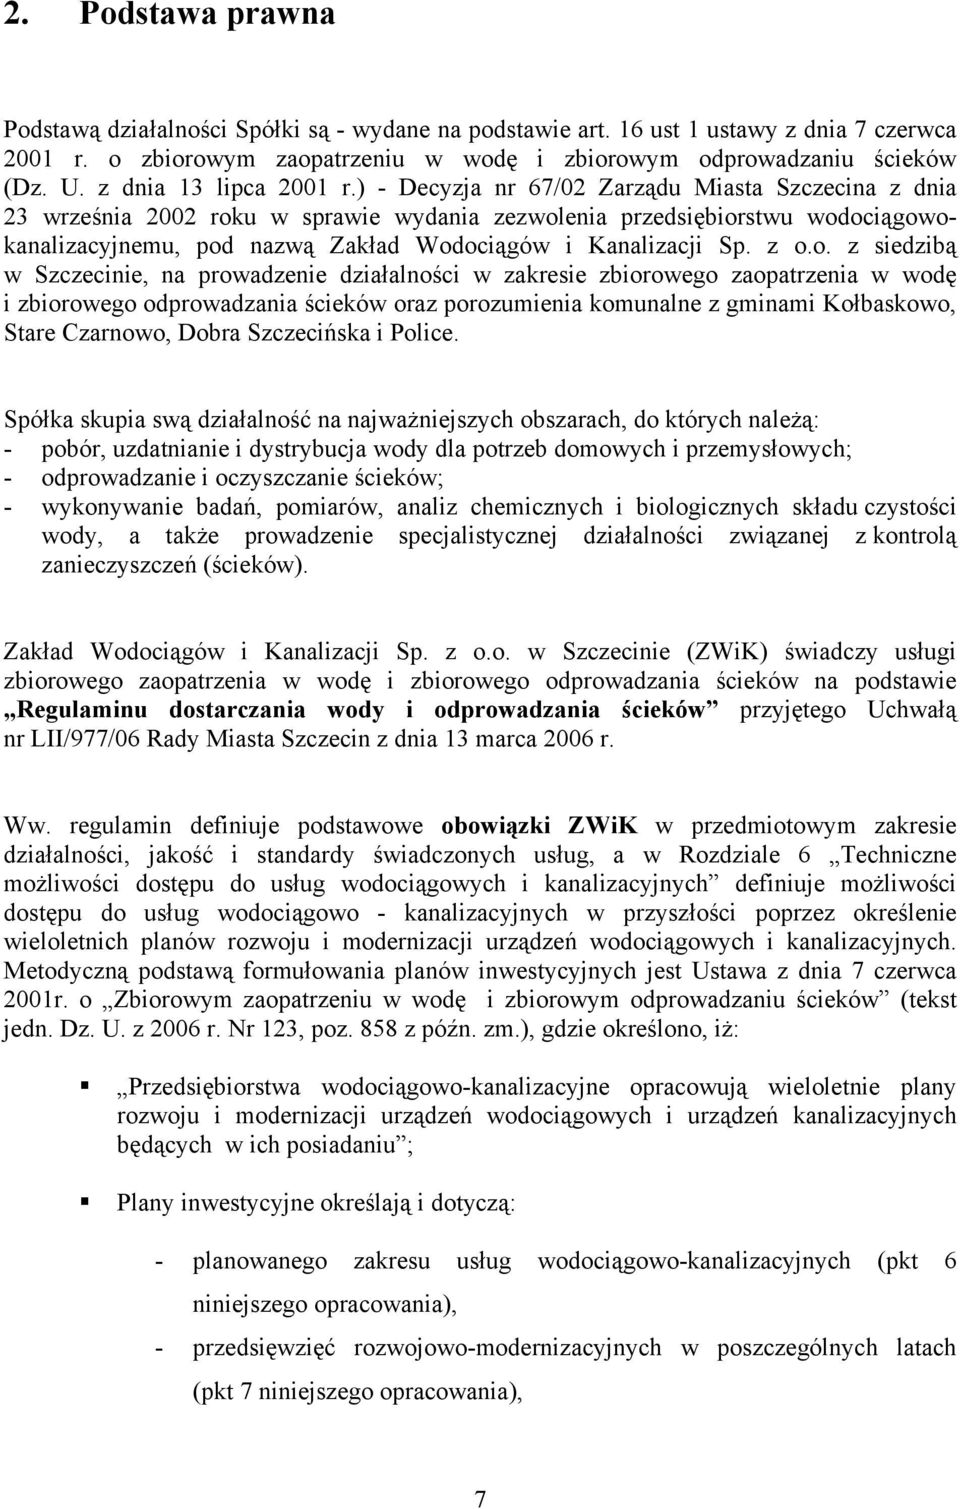 ) - Decyzja nr 67/02 Zarządu Miasta Szczecina z dnia 23 września 2002 roku w sprawie wydania zezwolenia przedsiębiorstwu wodociągowokanalizacyjnemu, pod nazwą Zakład Wodociągów i Kanalizacji Sp. z o.